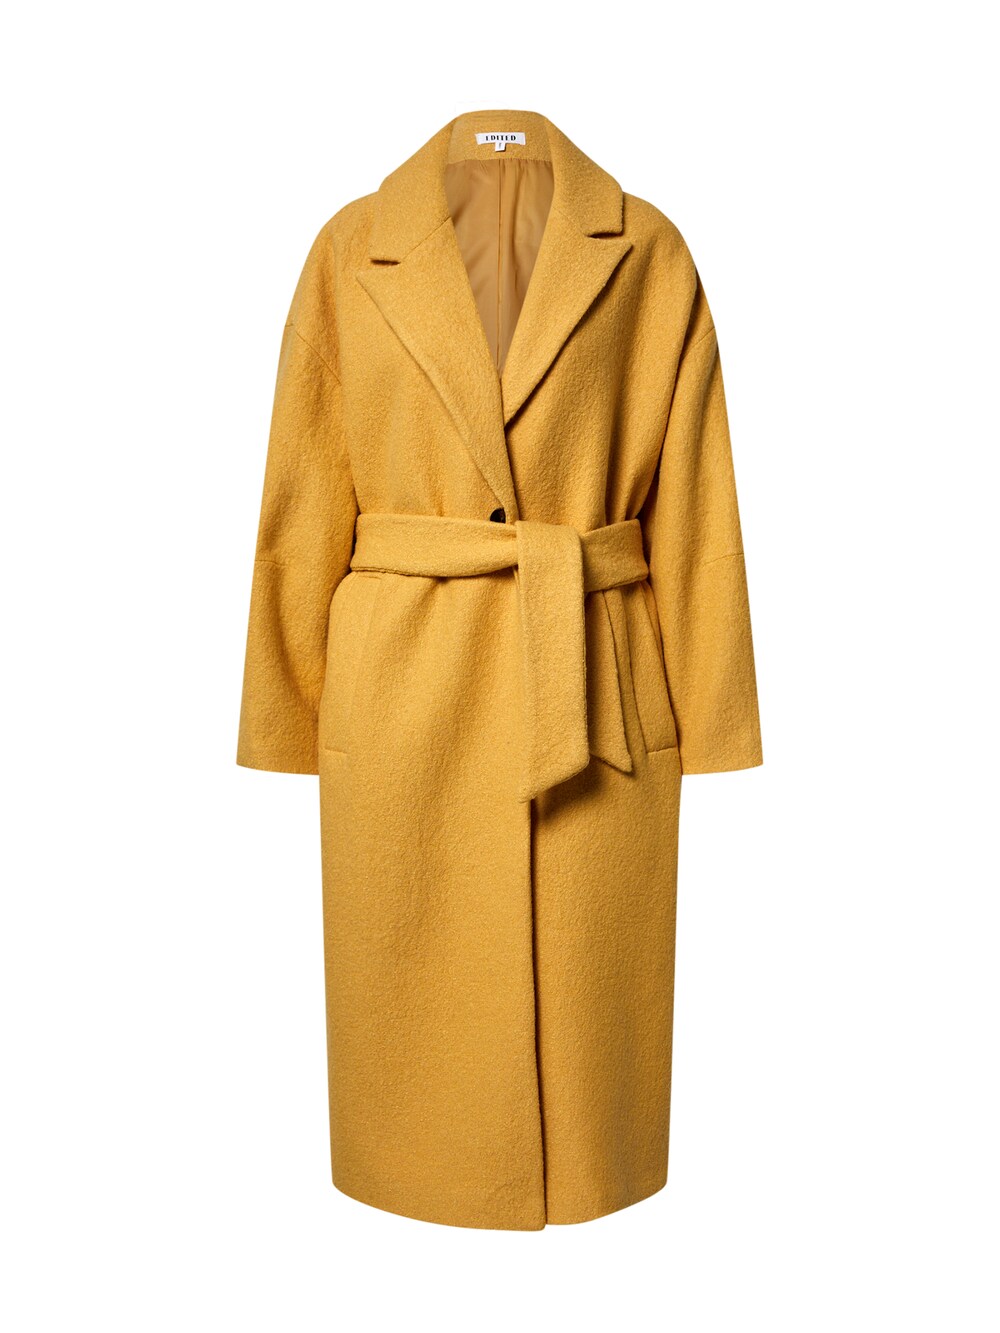 Межсезонное пальто EDITED Juli, желтый межсезонное пальто edited juli желтый